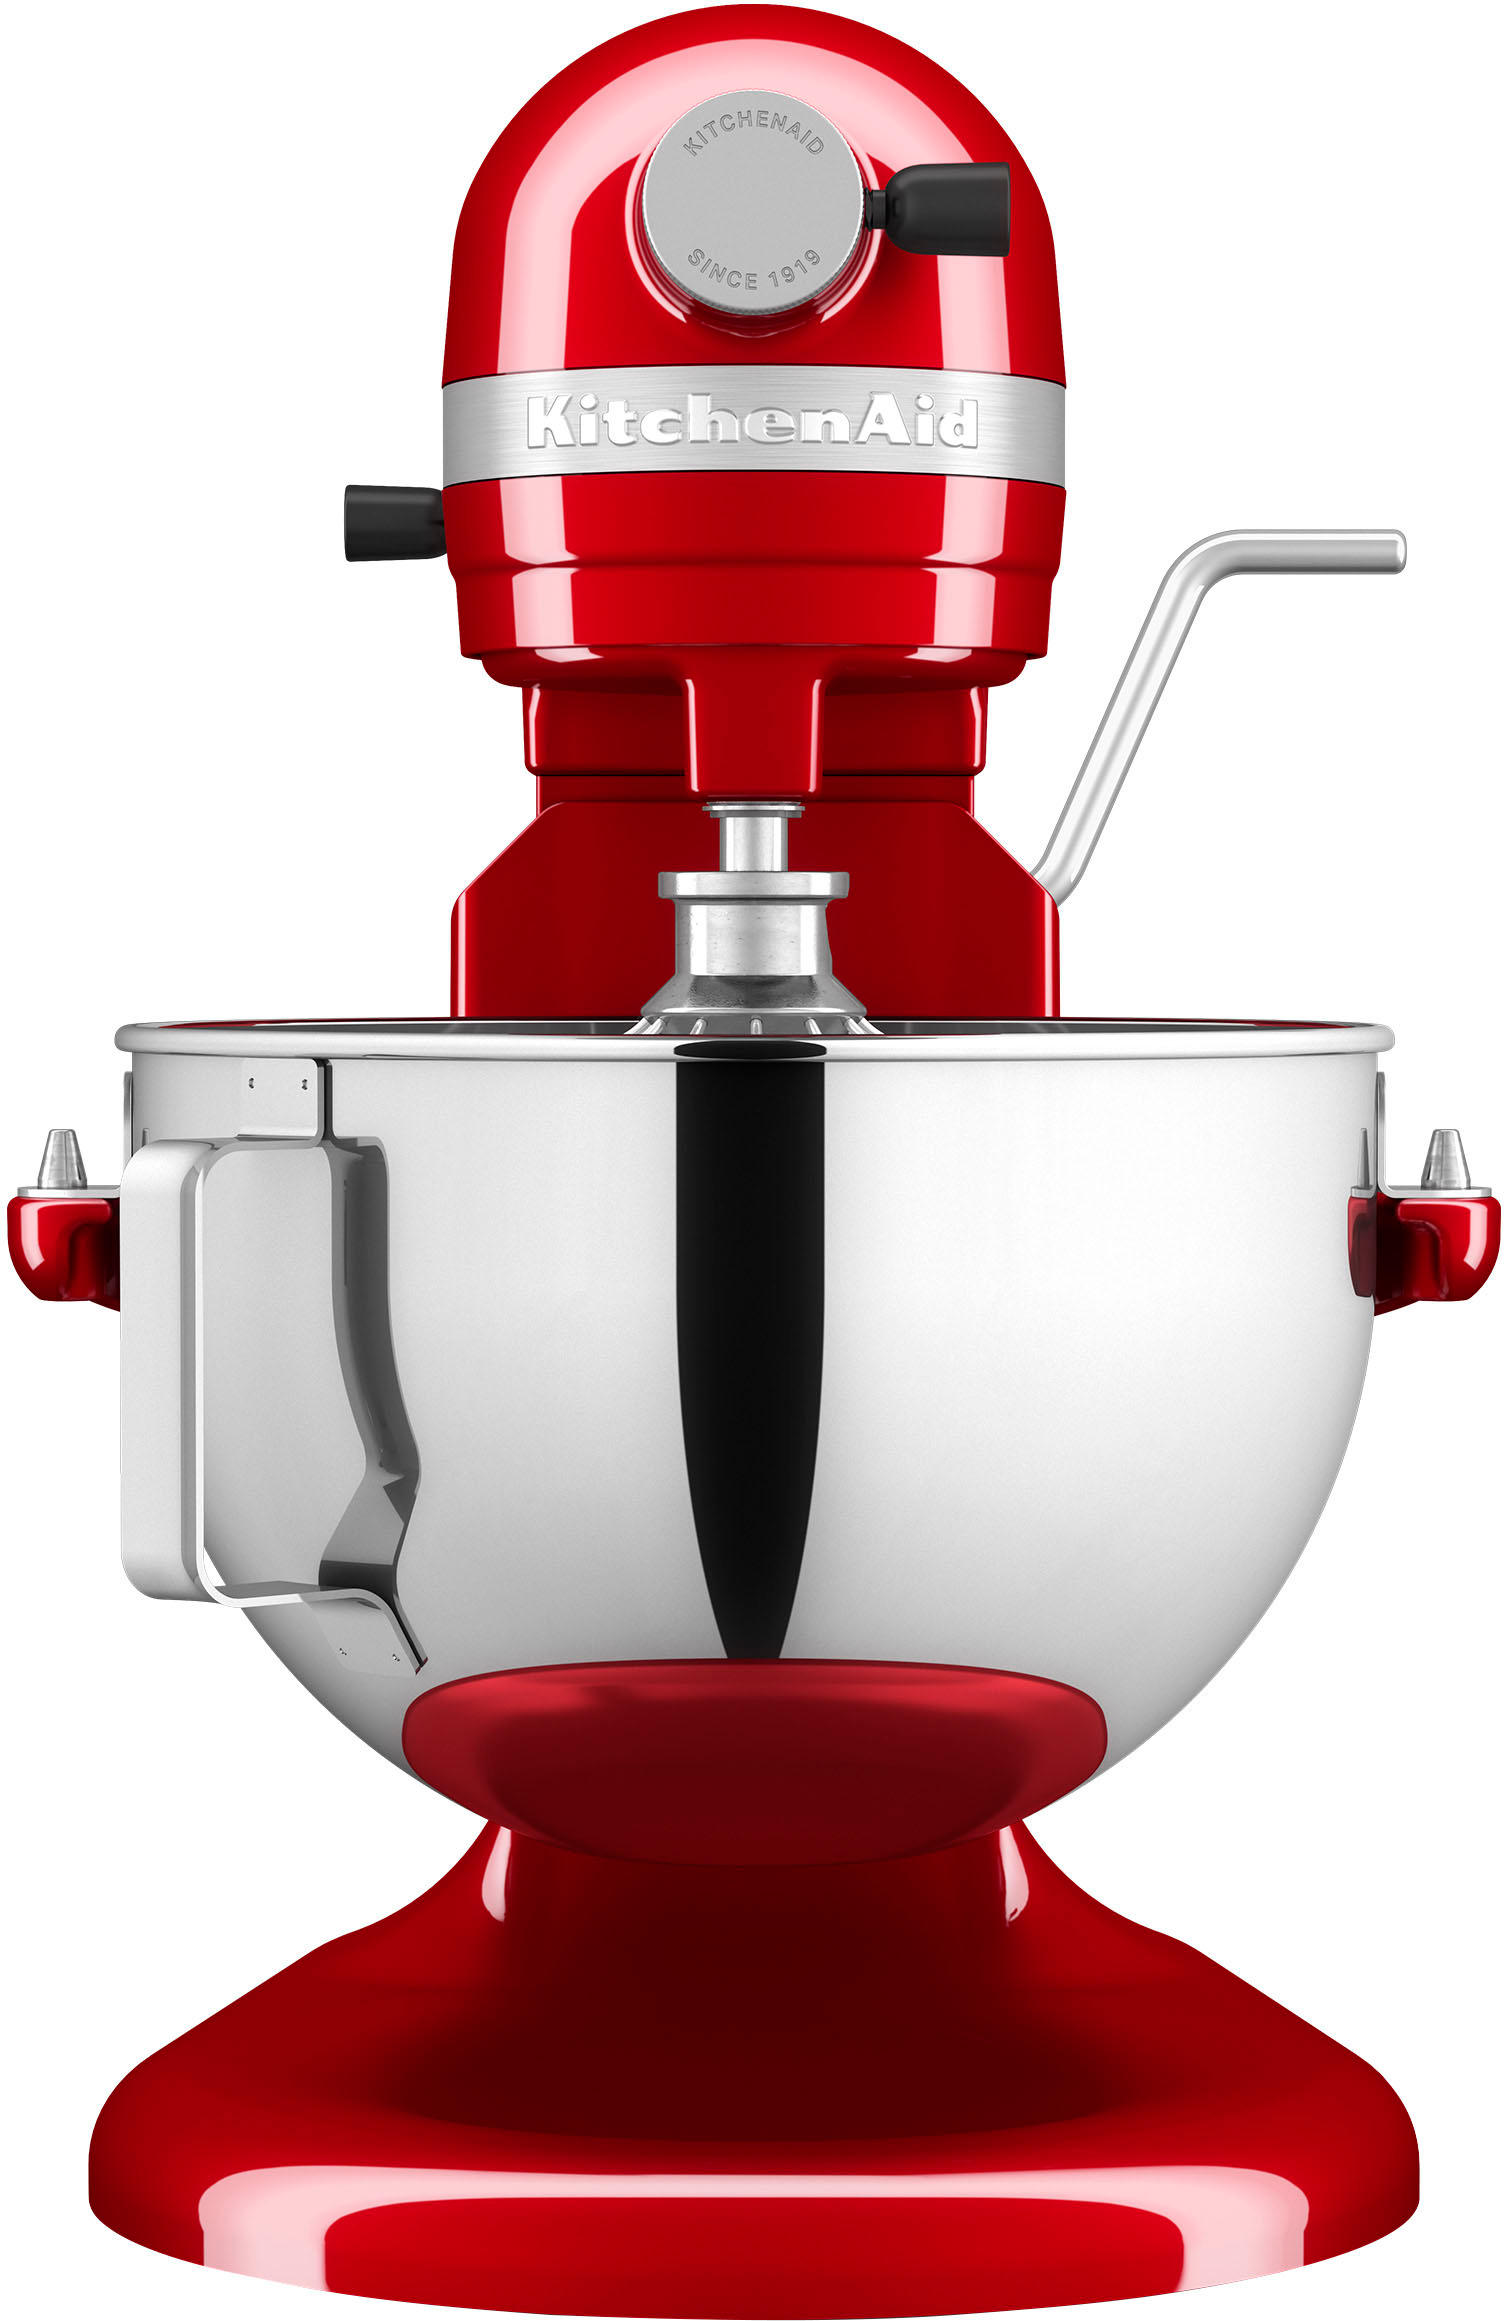 KitchenAid - 5.5 Quart Bowl-Lift Stand Mixer - Empire Red